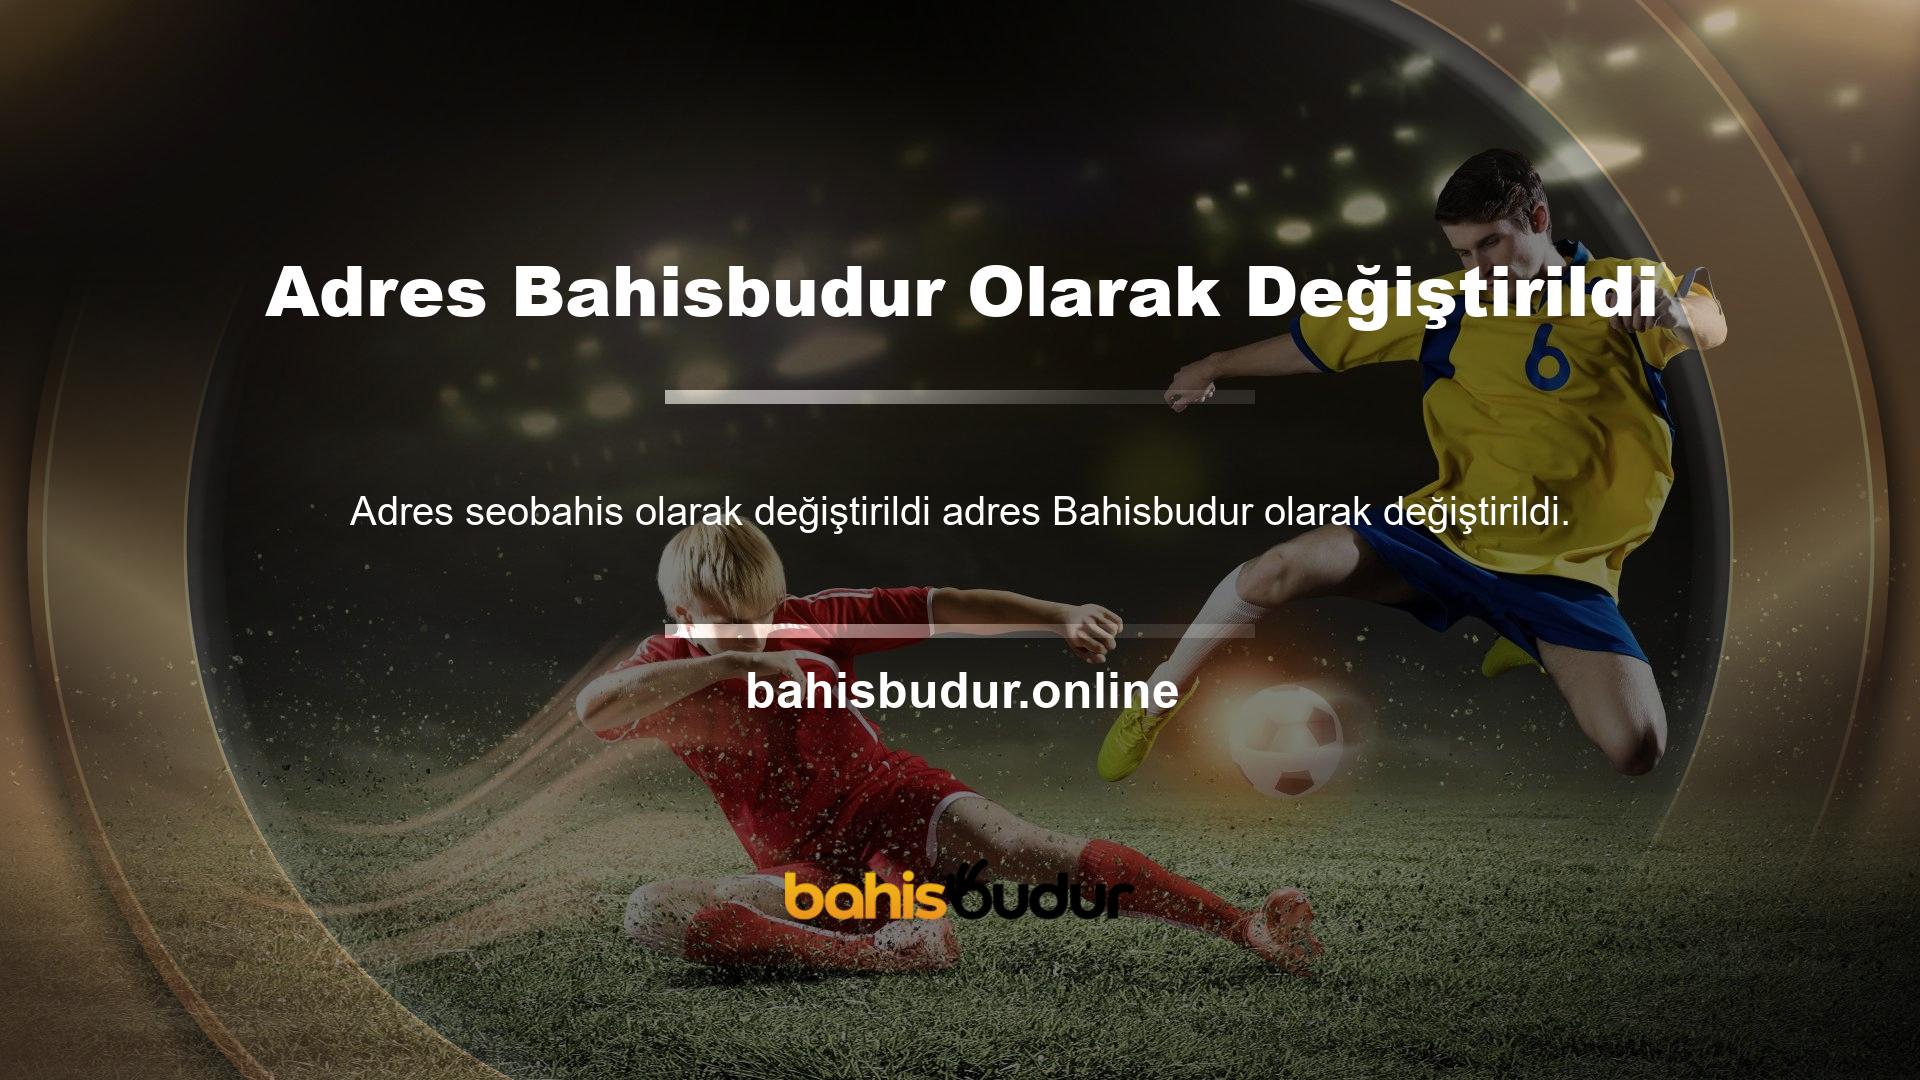 Bahisbudur giriş adresi siteye giriş yapmak için en iyi seçeneklerden biridir